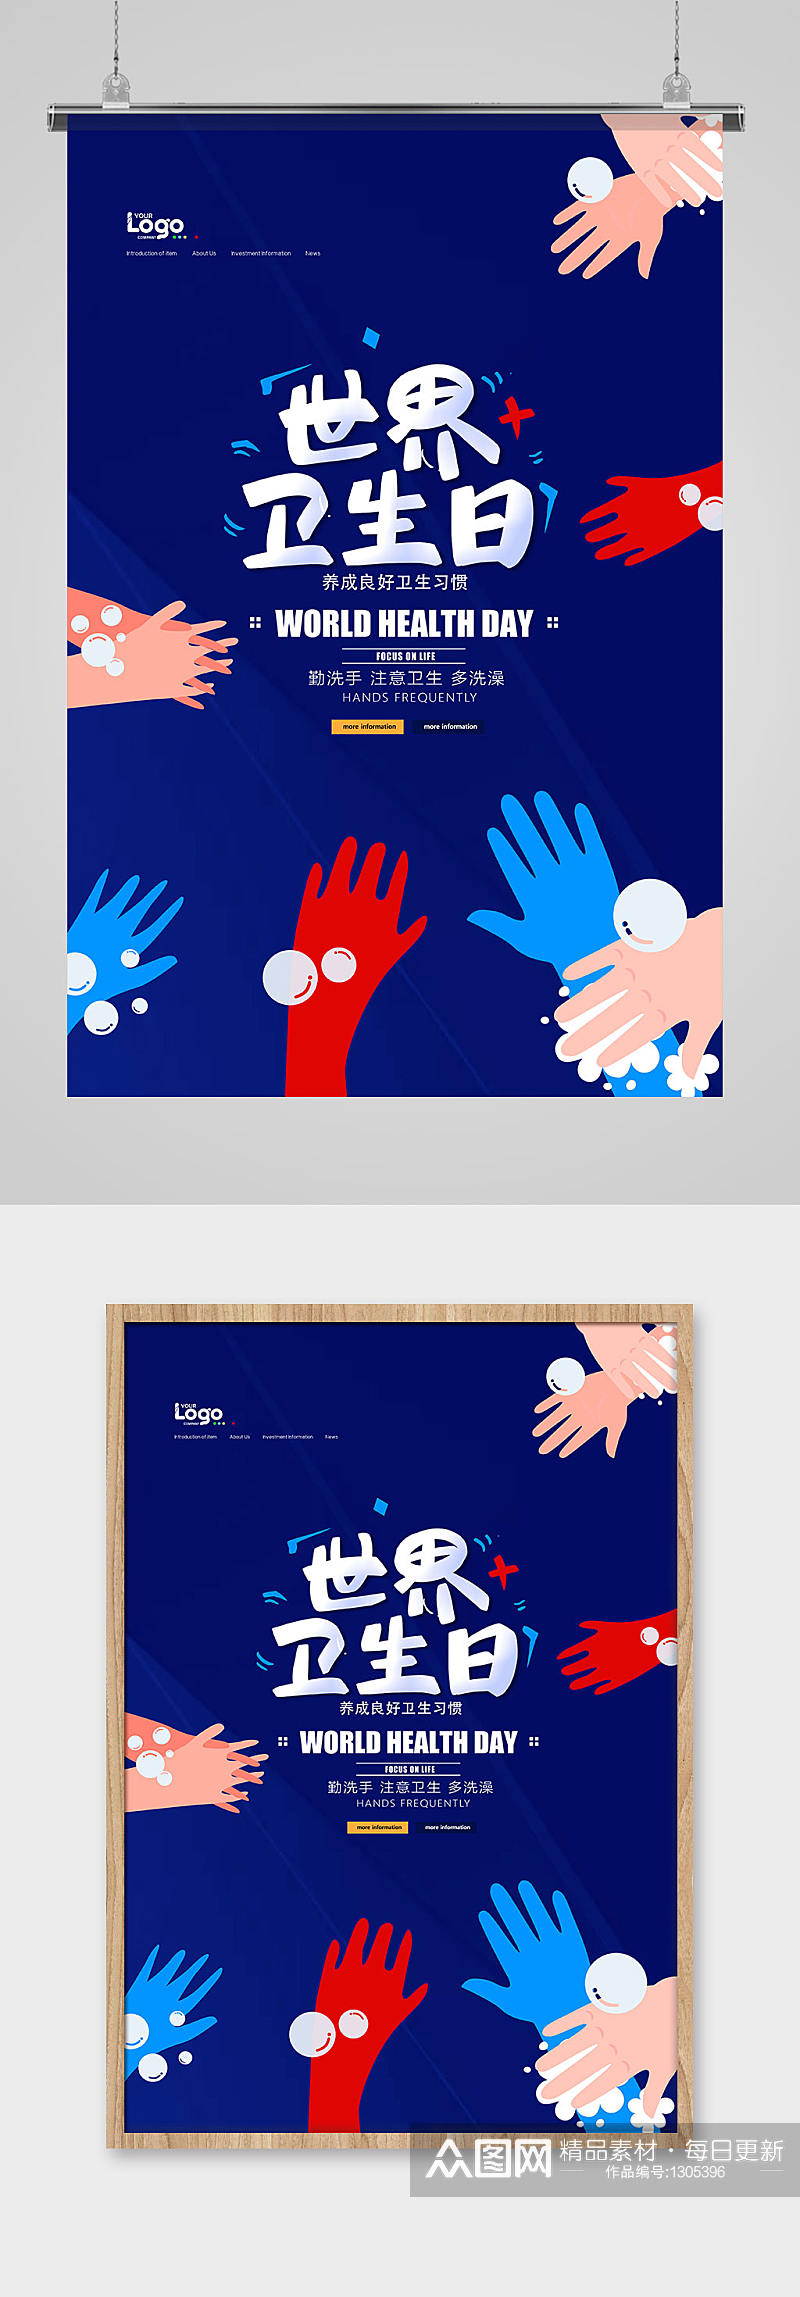 蓝色简洁世界卫生日海报设计素材